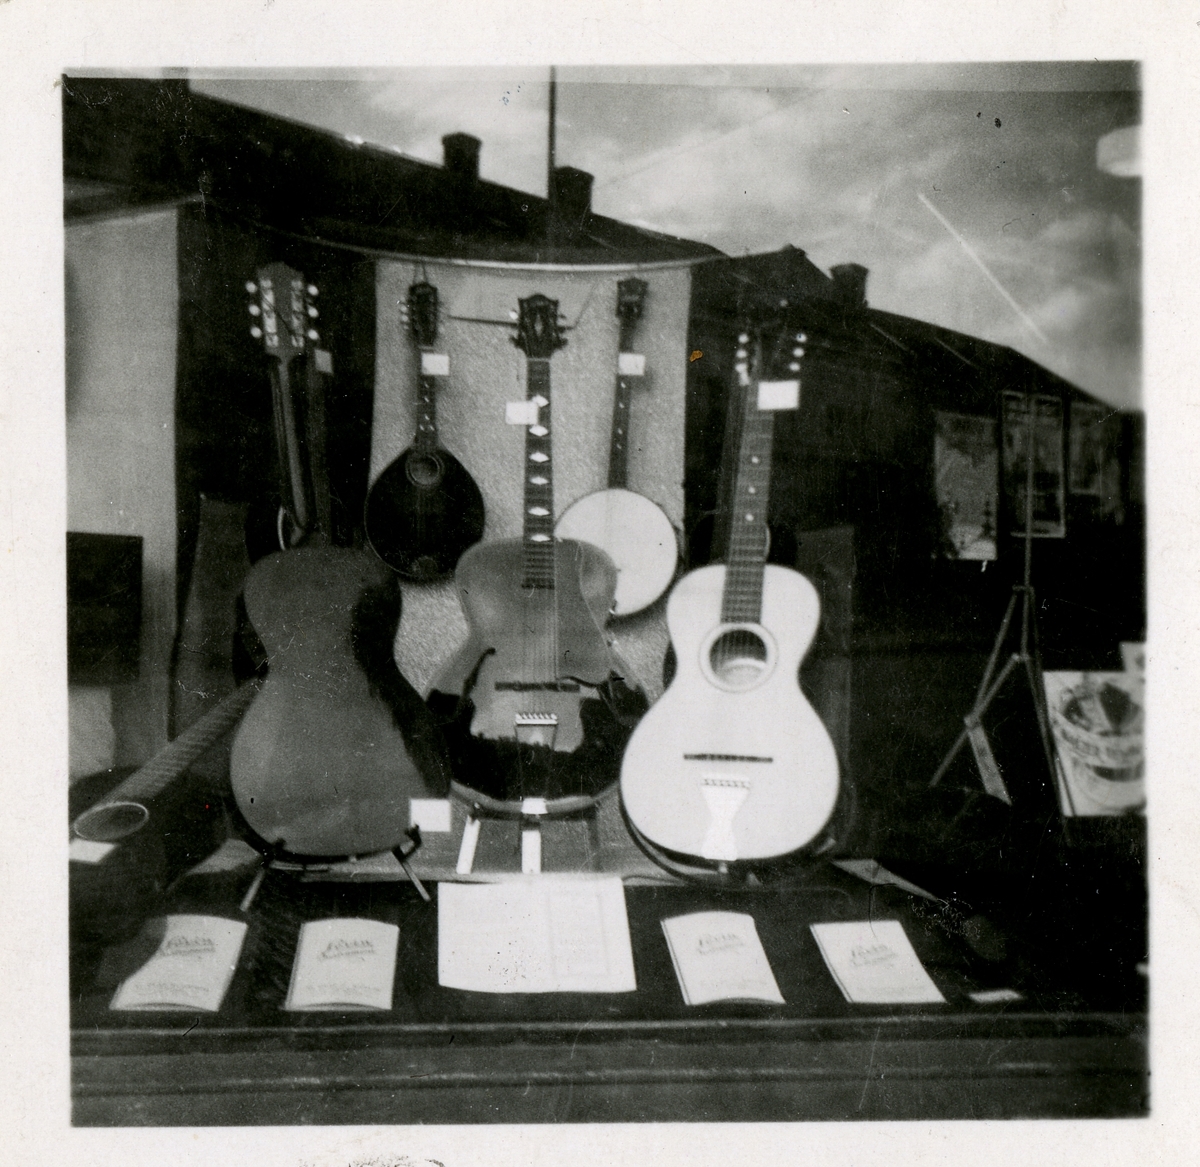 Fra familiealbum. Levin gitarer har fått en egen plass i en av butikkvinduene hos Olaf T. Ranum A/S.